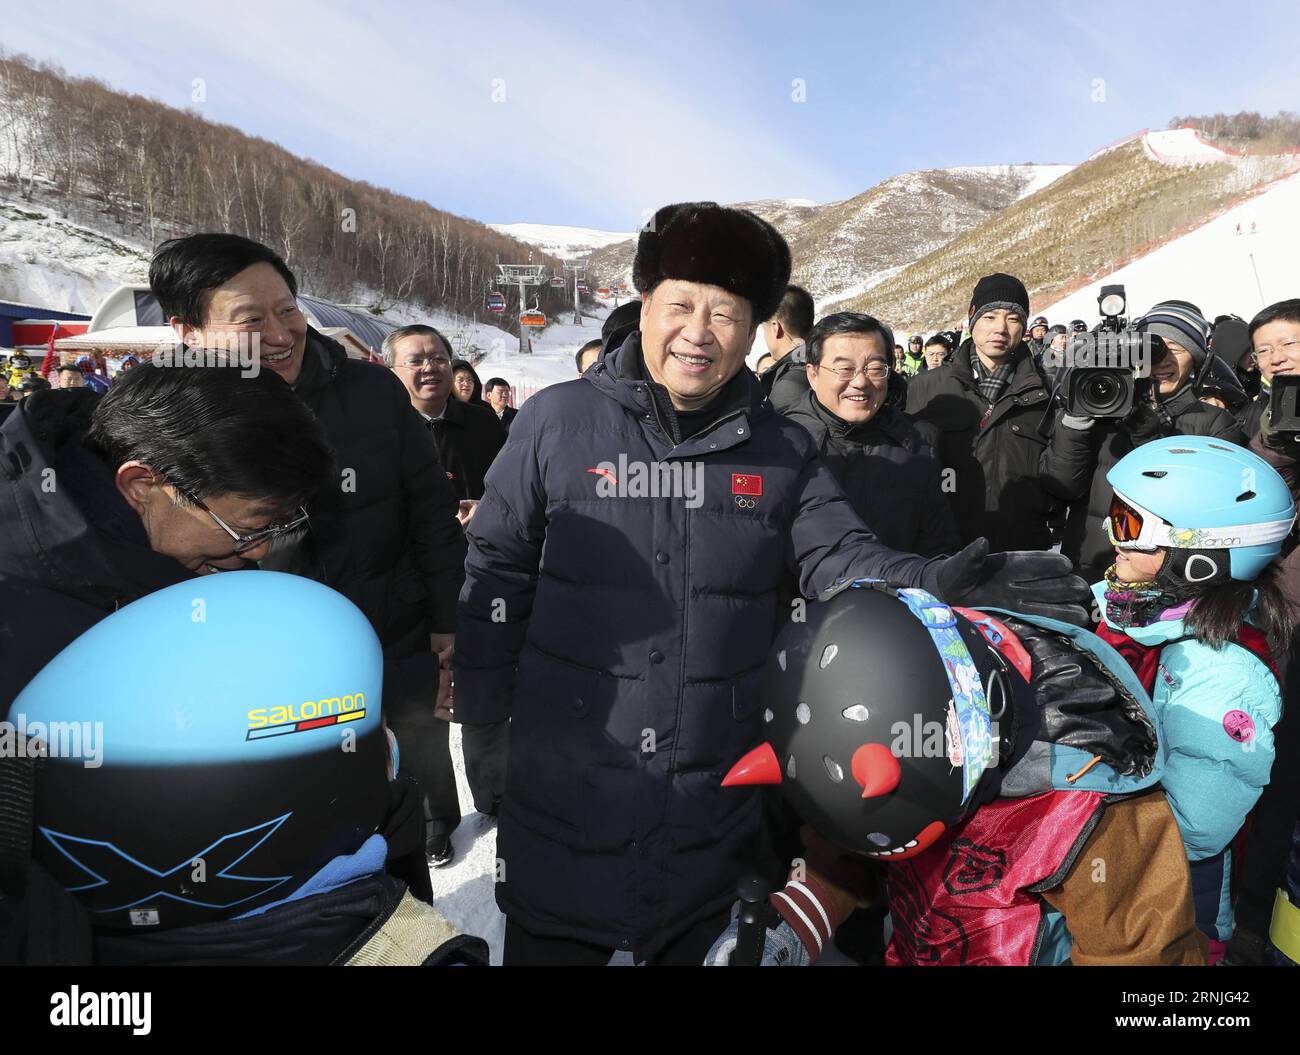 (170123) -- ZHANGJIAKOU, 23. Januar 2017 -- der chinesische Präsident Xi Jinping ermutigt Kinder, Ski-Wintercamps im Skigebiet Genting zu besuchen, während er die Vorbereitungsarbeiten für die Olympischen Winterspiele 2022 in Peking in der Stadt Zhangjiakou, Provinz Hebei, im Norden Chinas, am 23. Januar 2017 inspiziert. ) (lfj) CHINA-XI JINPING-2022 WINTER OLYMPICS-INSPECTION (CN) LanxHongguang PUBLICATIONxNOTxINxCHN Zhangjiakou 23. Januar 2017 der chinesische Präsident Xi Jinping ermutigt Kinder, Ski-Winterlager IM Skigebiet Genting zu besuchen, während er die Vorbereitungsarbeiten für die Olympischen Winterspiele 2022 in Peking in der Stadt Zhangjiakou IM Norden inspiziert Stockfoto